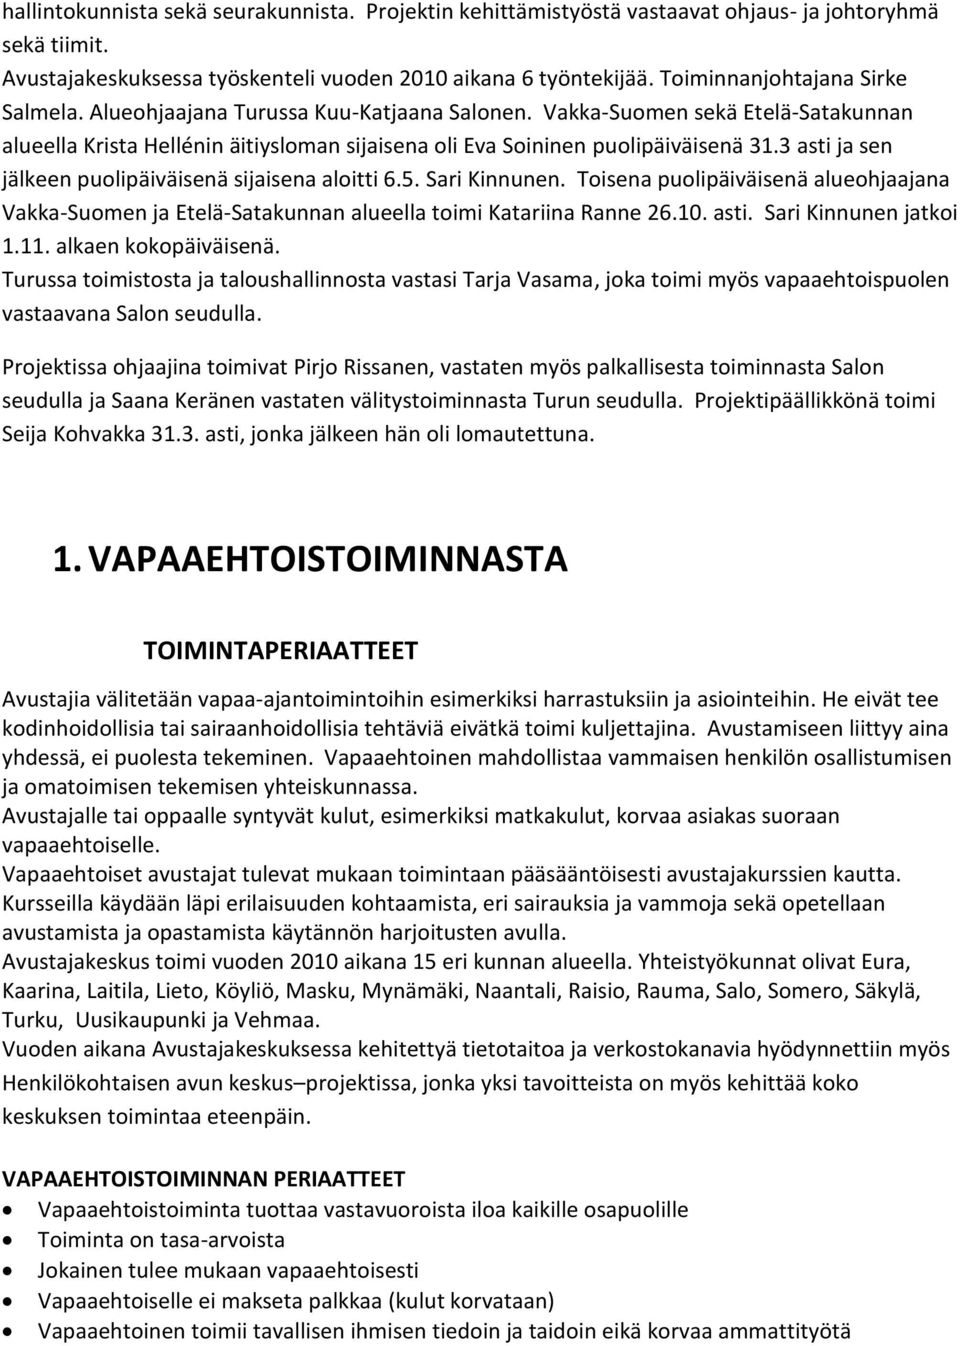 3 asti ja sen jälkeen puolipäiväisenä sijaisena aloitti 6.5. Sari Kinnunen. Toisena puolipäiväisenä alueohjaajana Vakka-Suomen ja Etelä-Satakunnan alueella toimi Katariina Ranne 26.10. asti. Sari Kinnunen jatkoi 1.